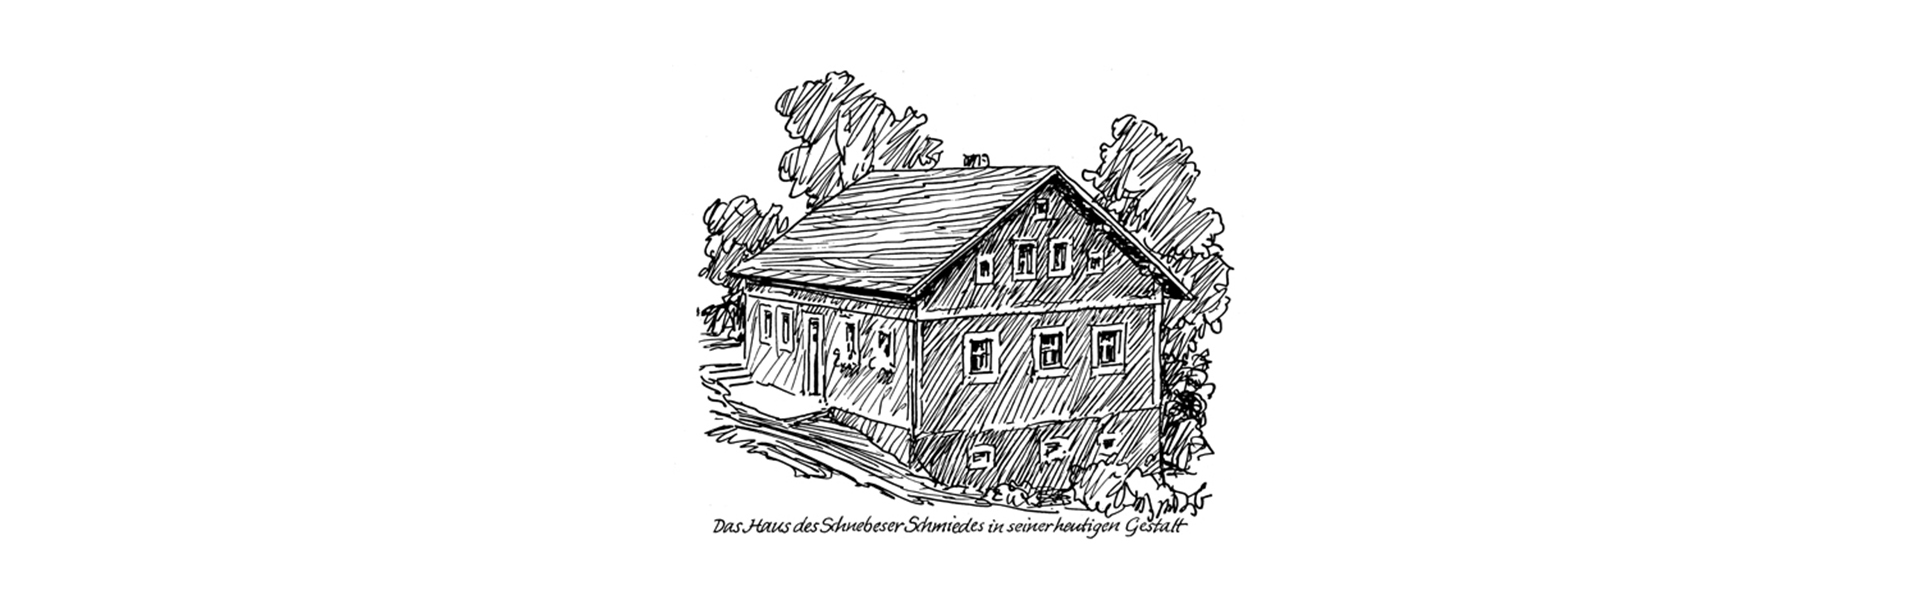 Zeichnung Schnebeser Haus